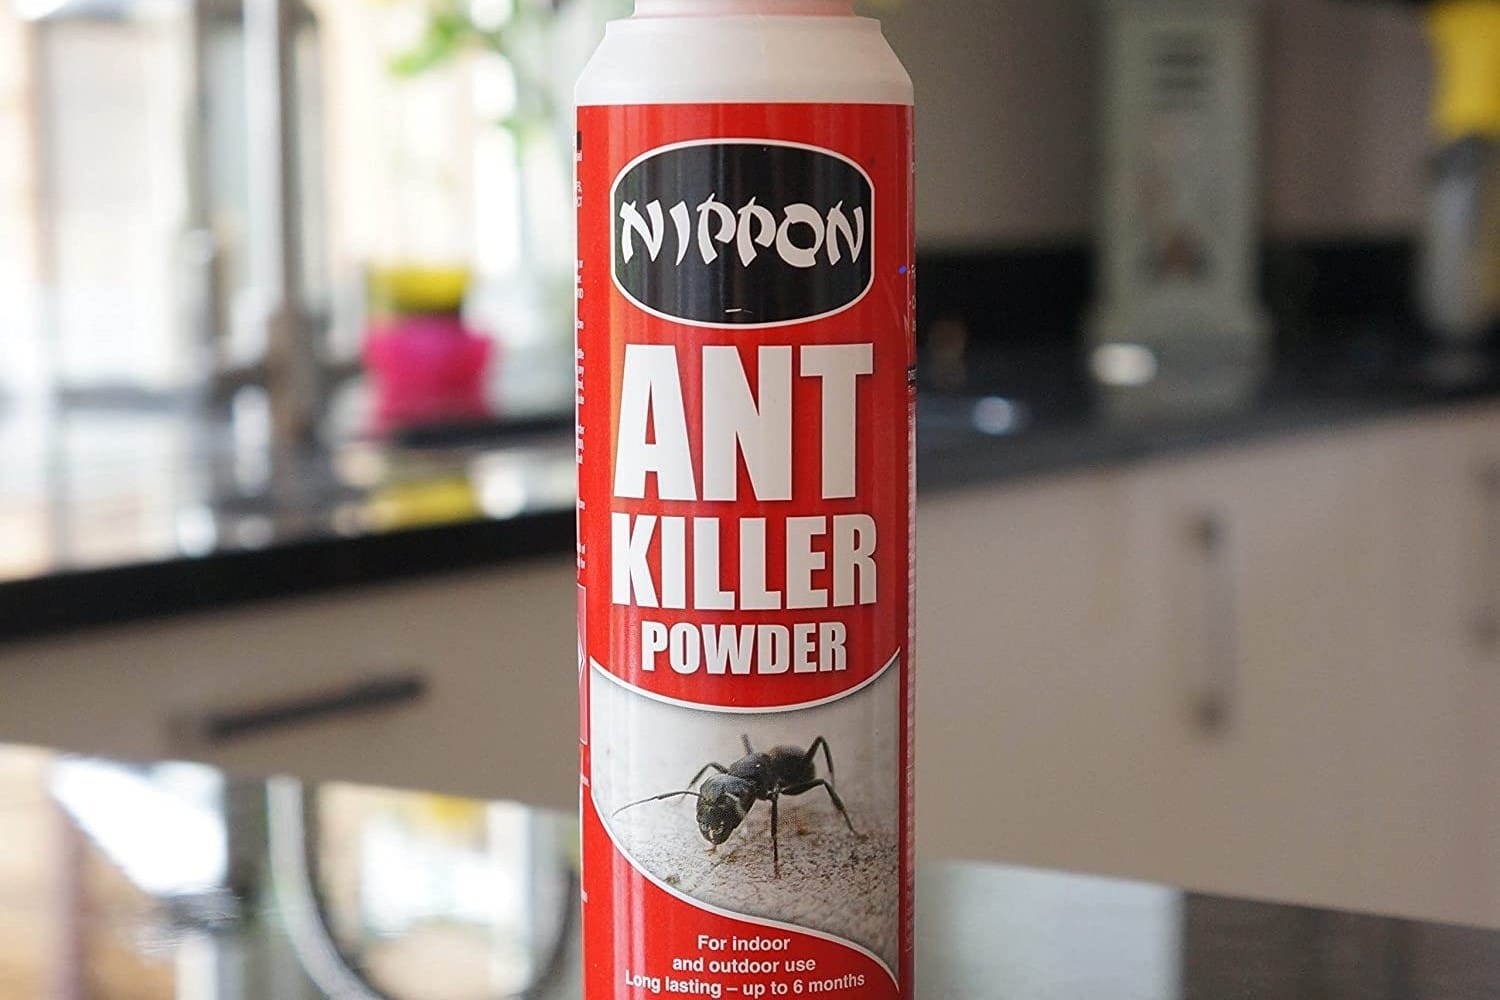 Powder killer. Raid Ant Killer.